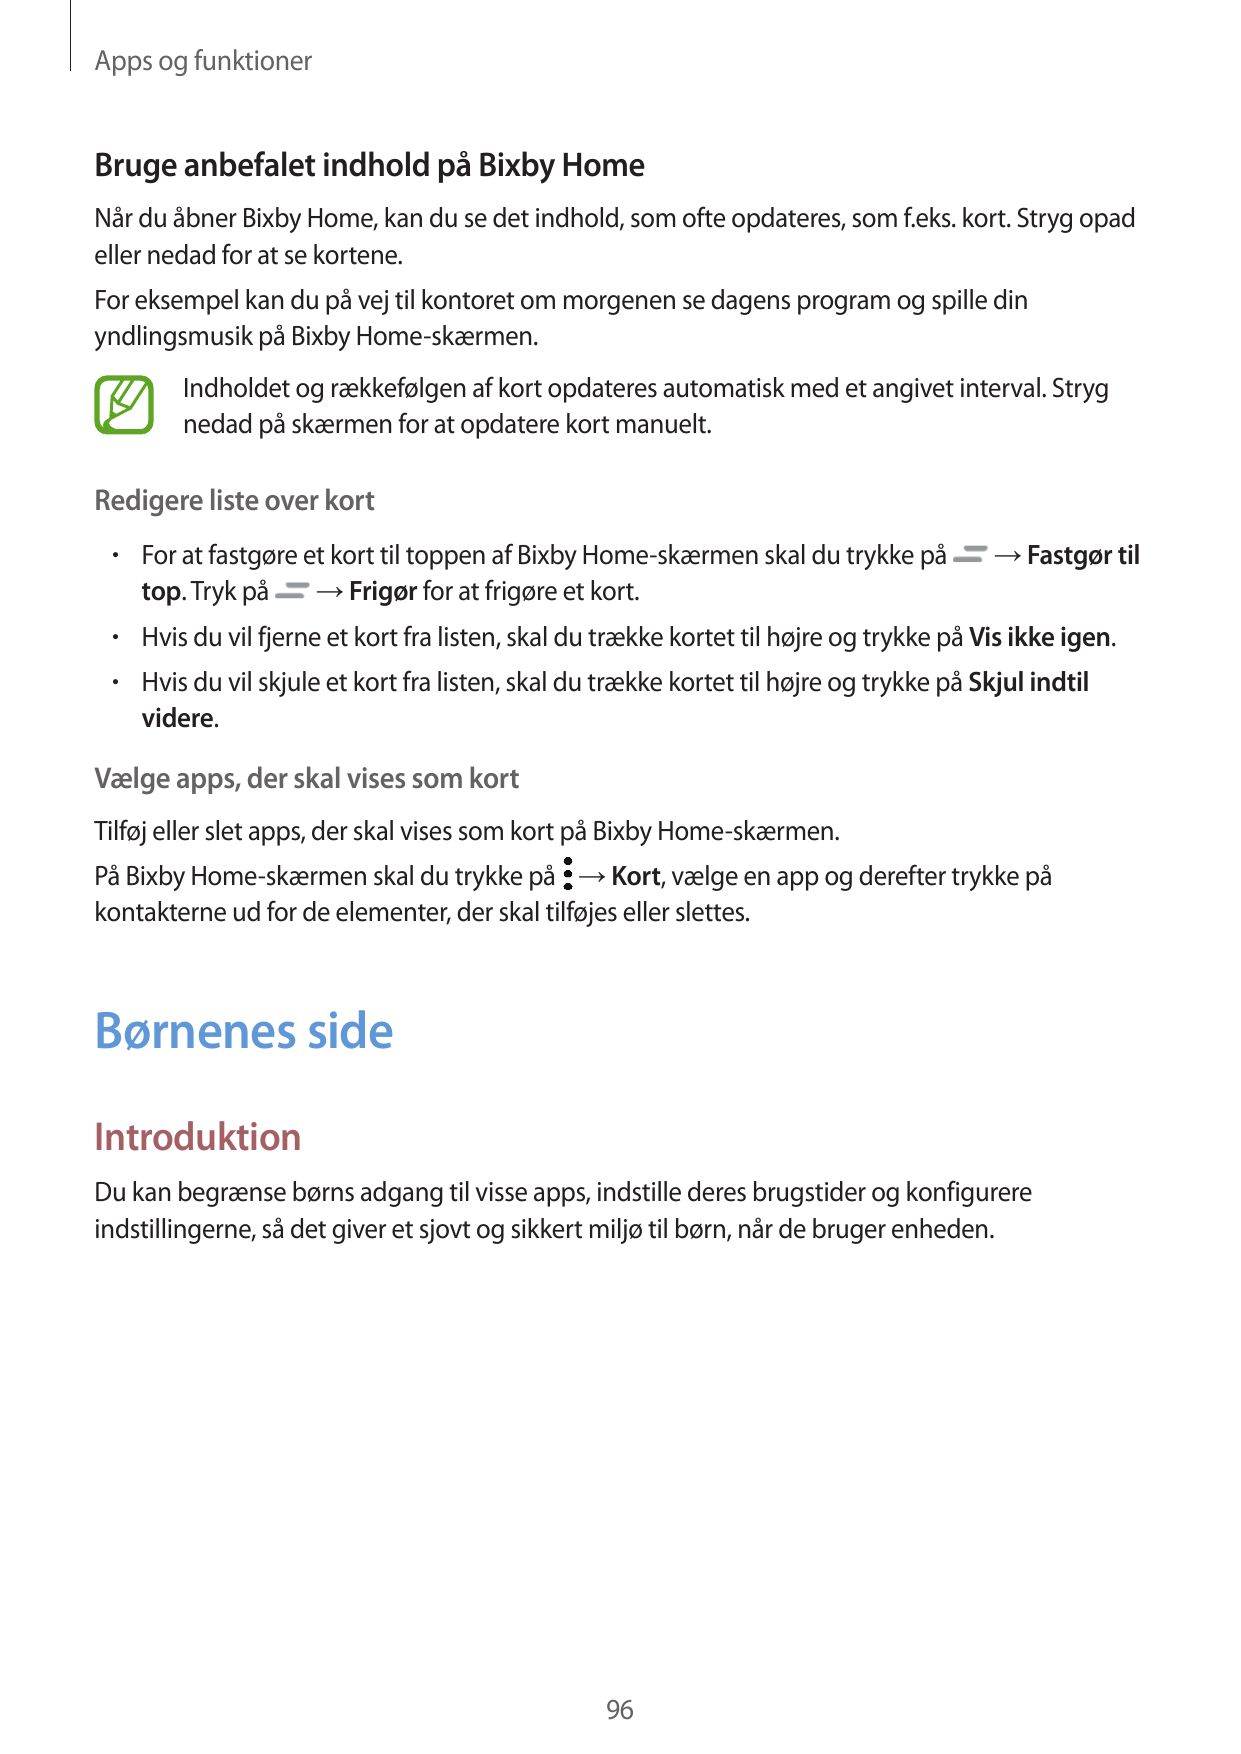 Apps og funktionerBruge anbefalet indhold på Bixby HomeNår du åbner Bixby Home, kan du se det indhold, som ofte opdateres, som f